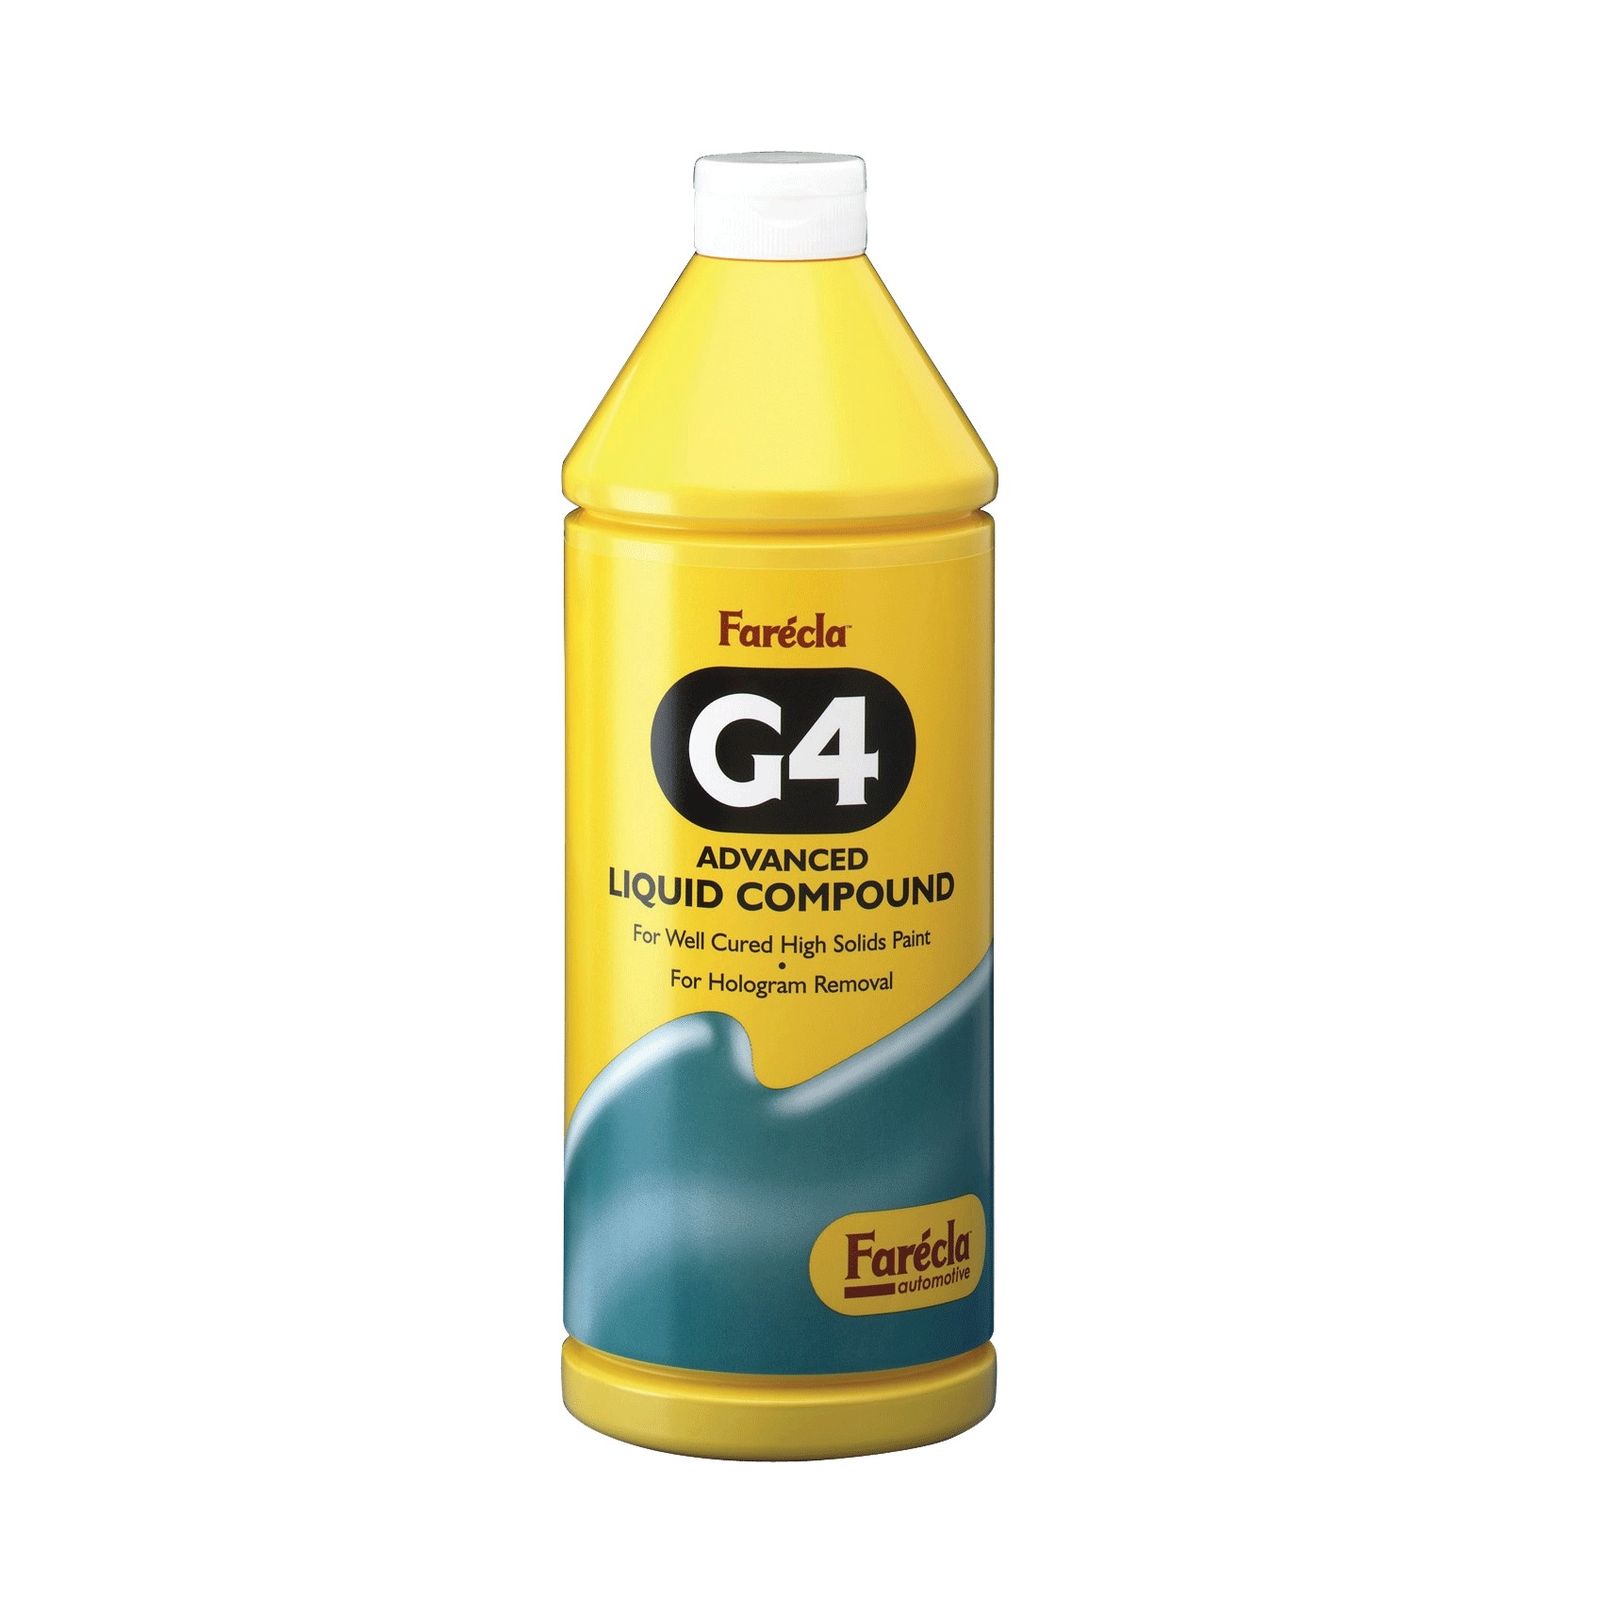 Farecla G4 Liquid Высокоабразивная полировальная паста, 1 л